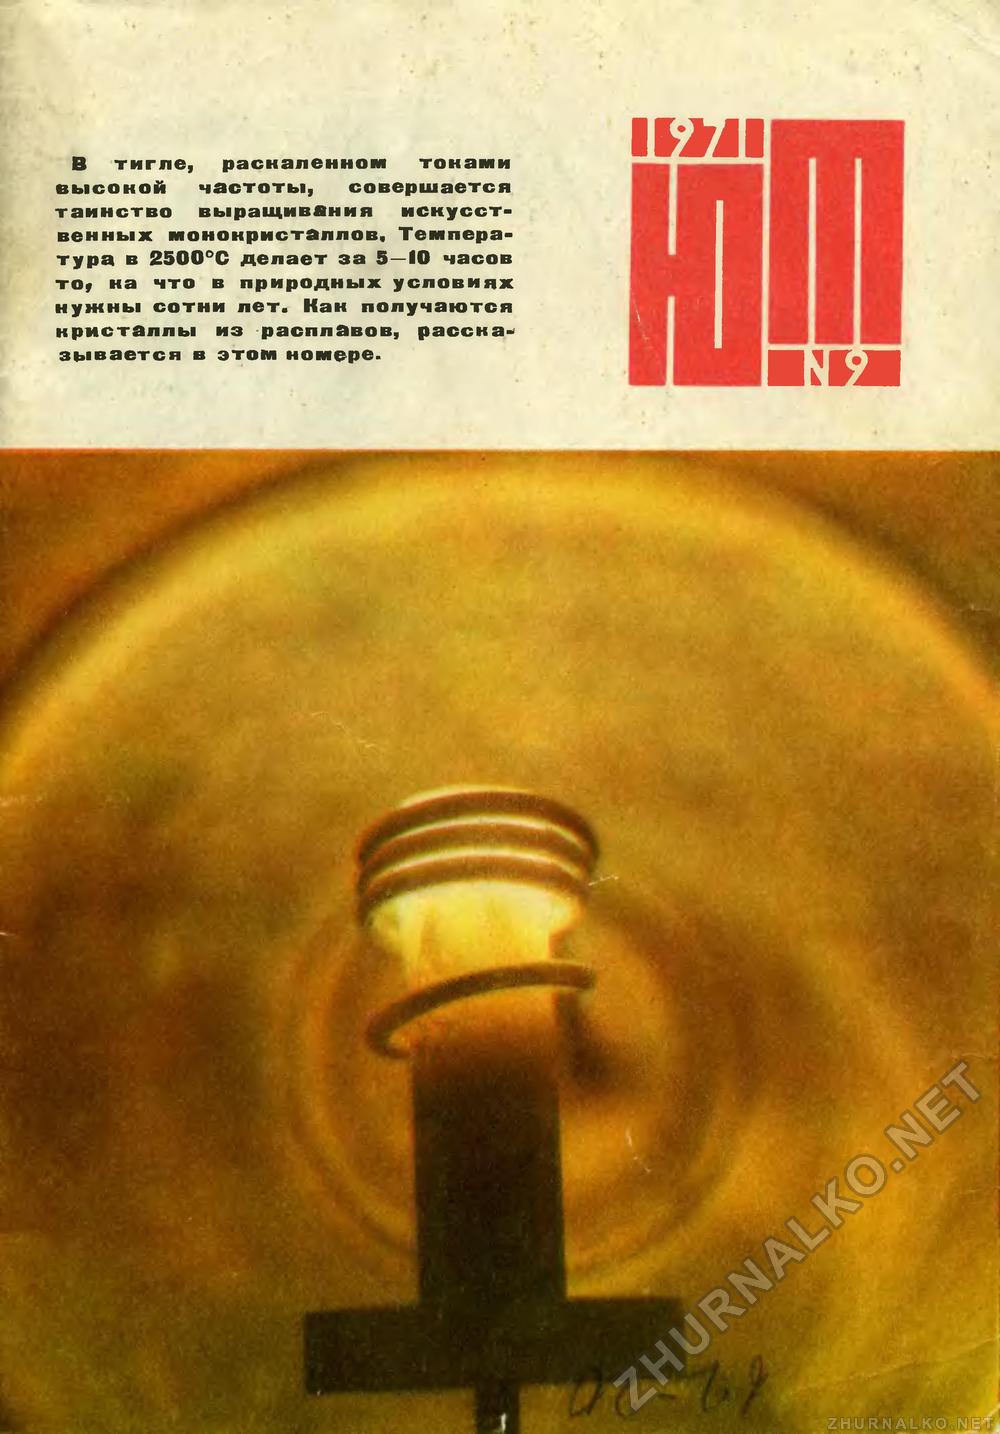   1971-09,  1